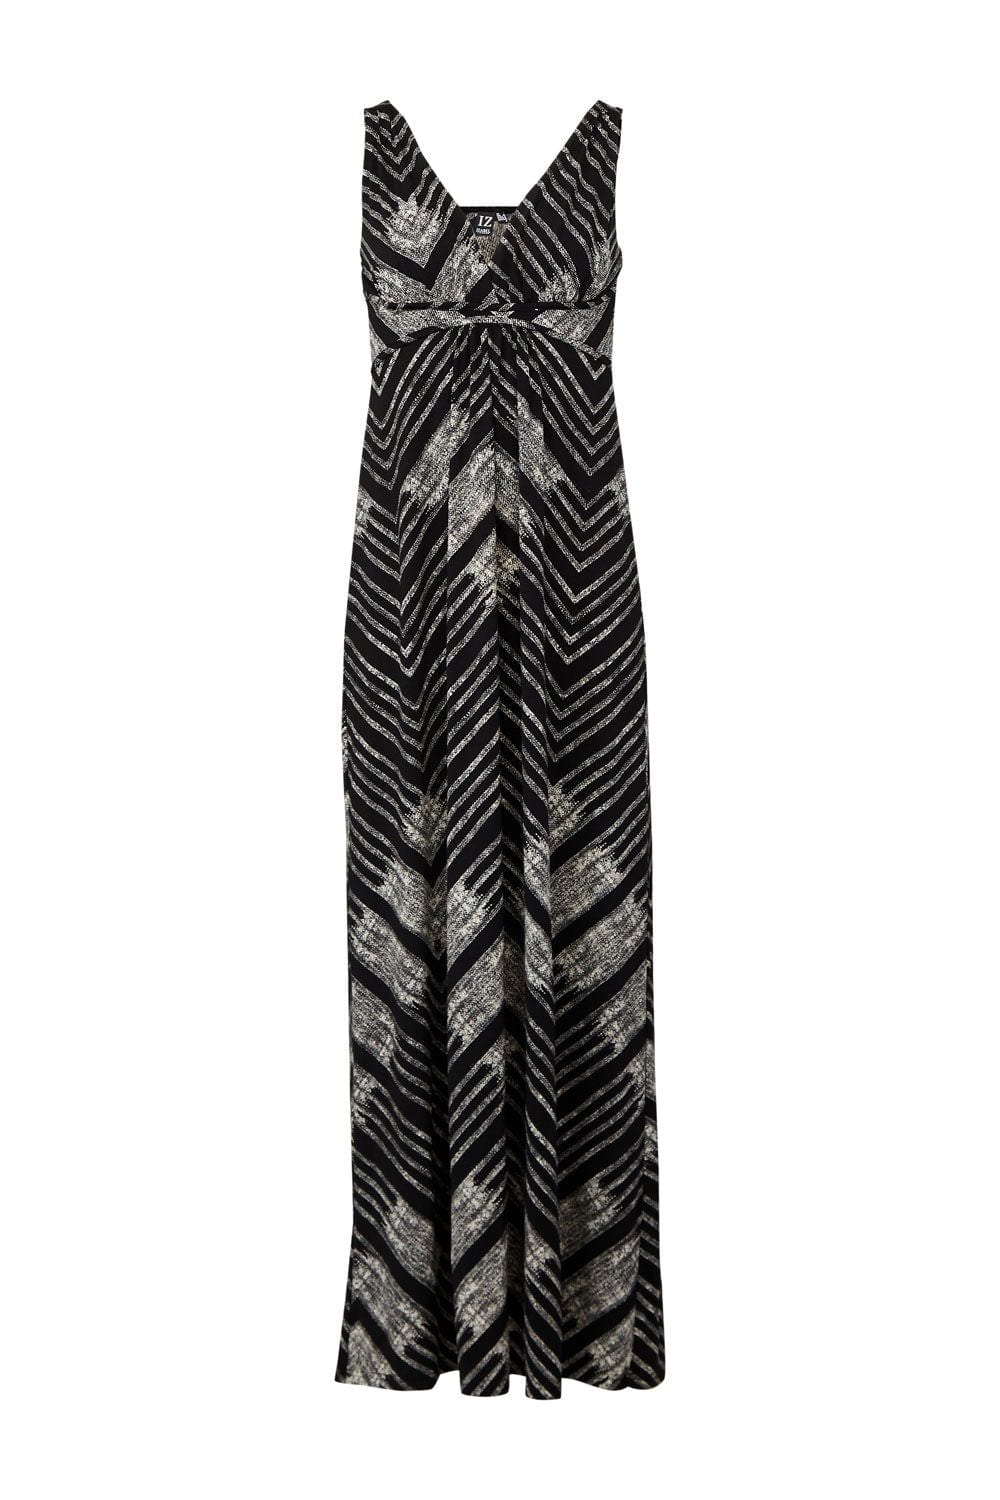 Black | Aztec Print Maxi Dress